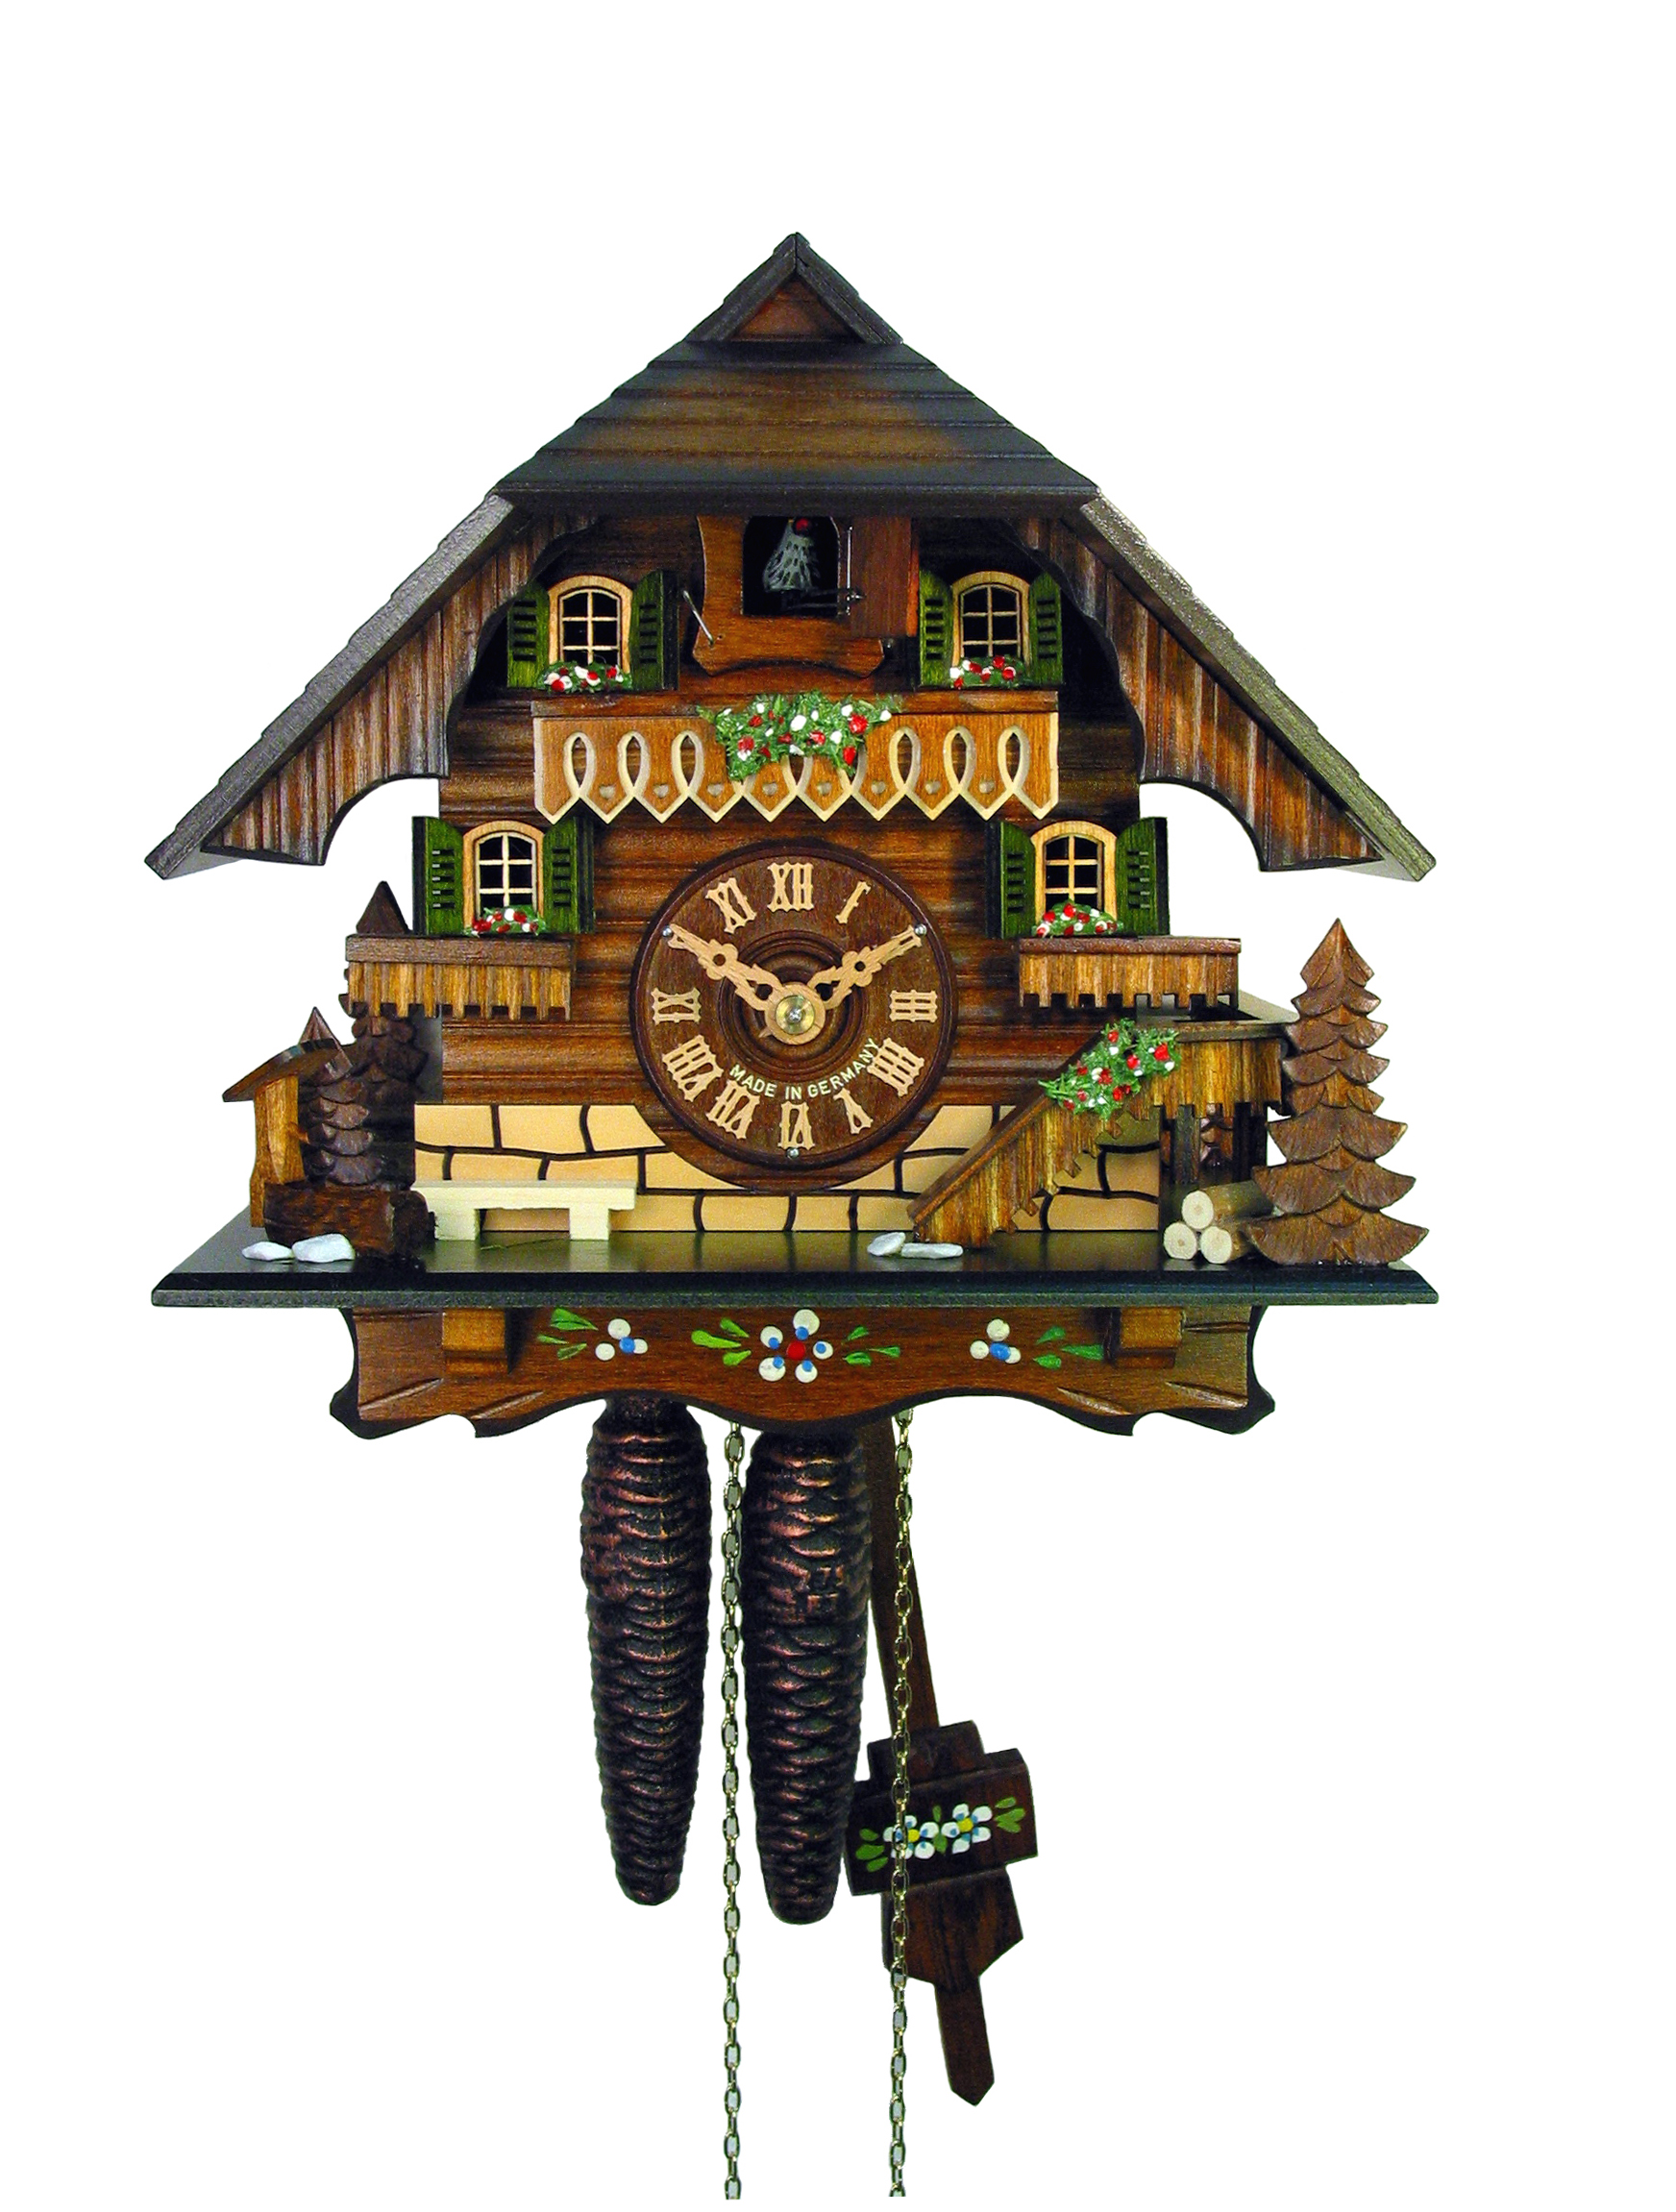 Orologi a cucu - vendita online - orologio cucu - Online Shop di Patrick  Demetz - artigianato locale della Val Gardena - orologi della foresta nera  - vendita orologi a cucu dp-woodcarvings 